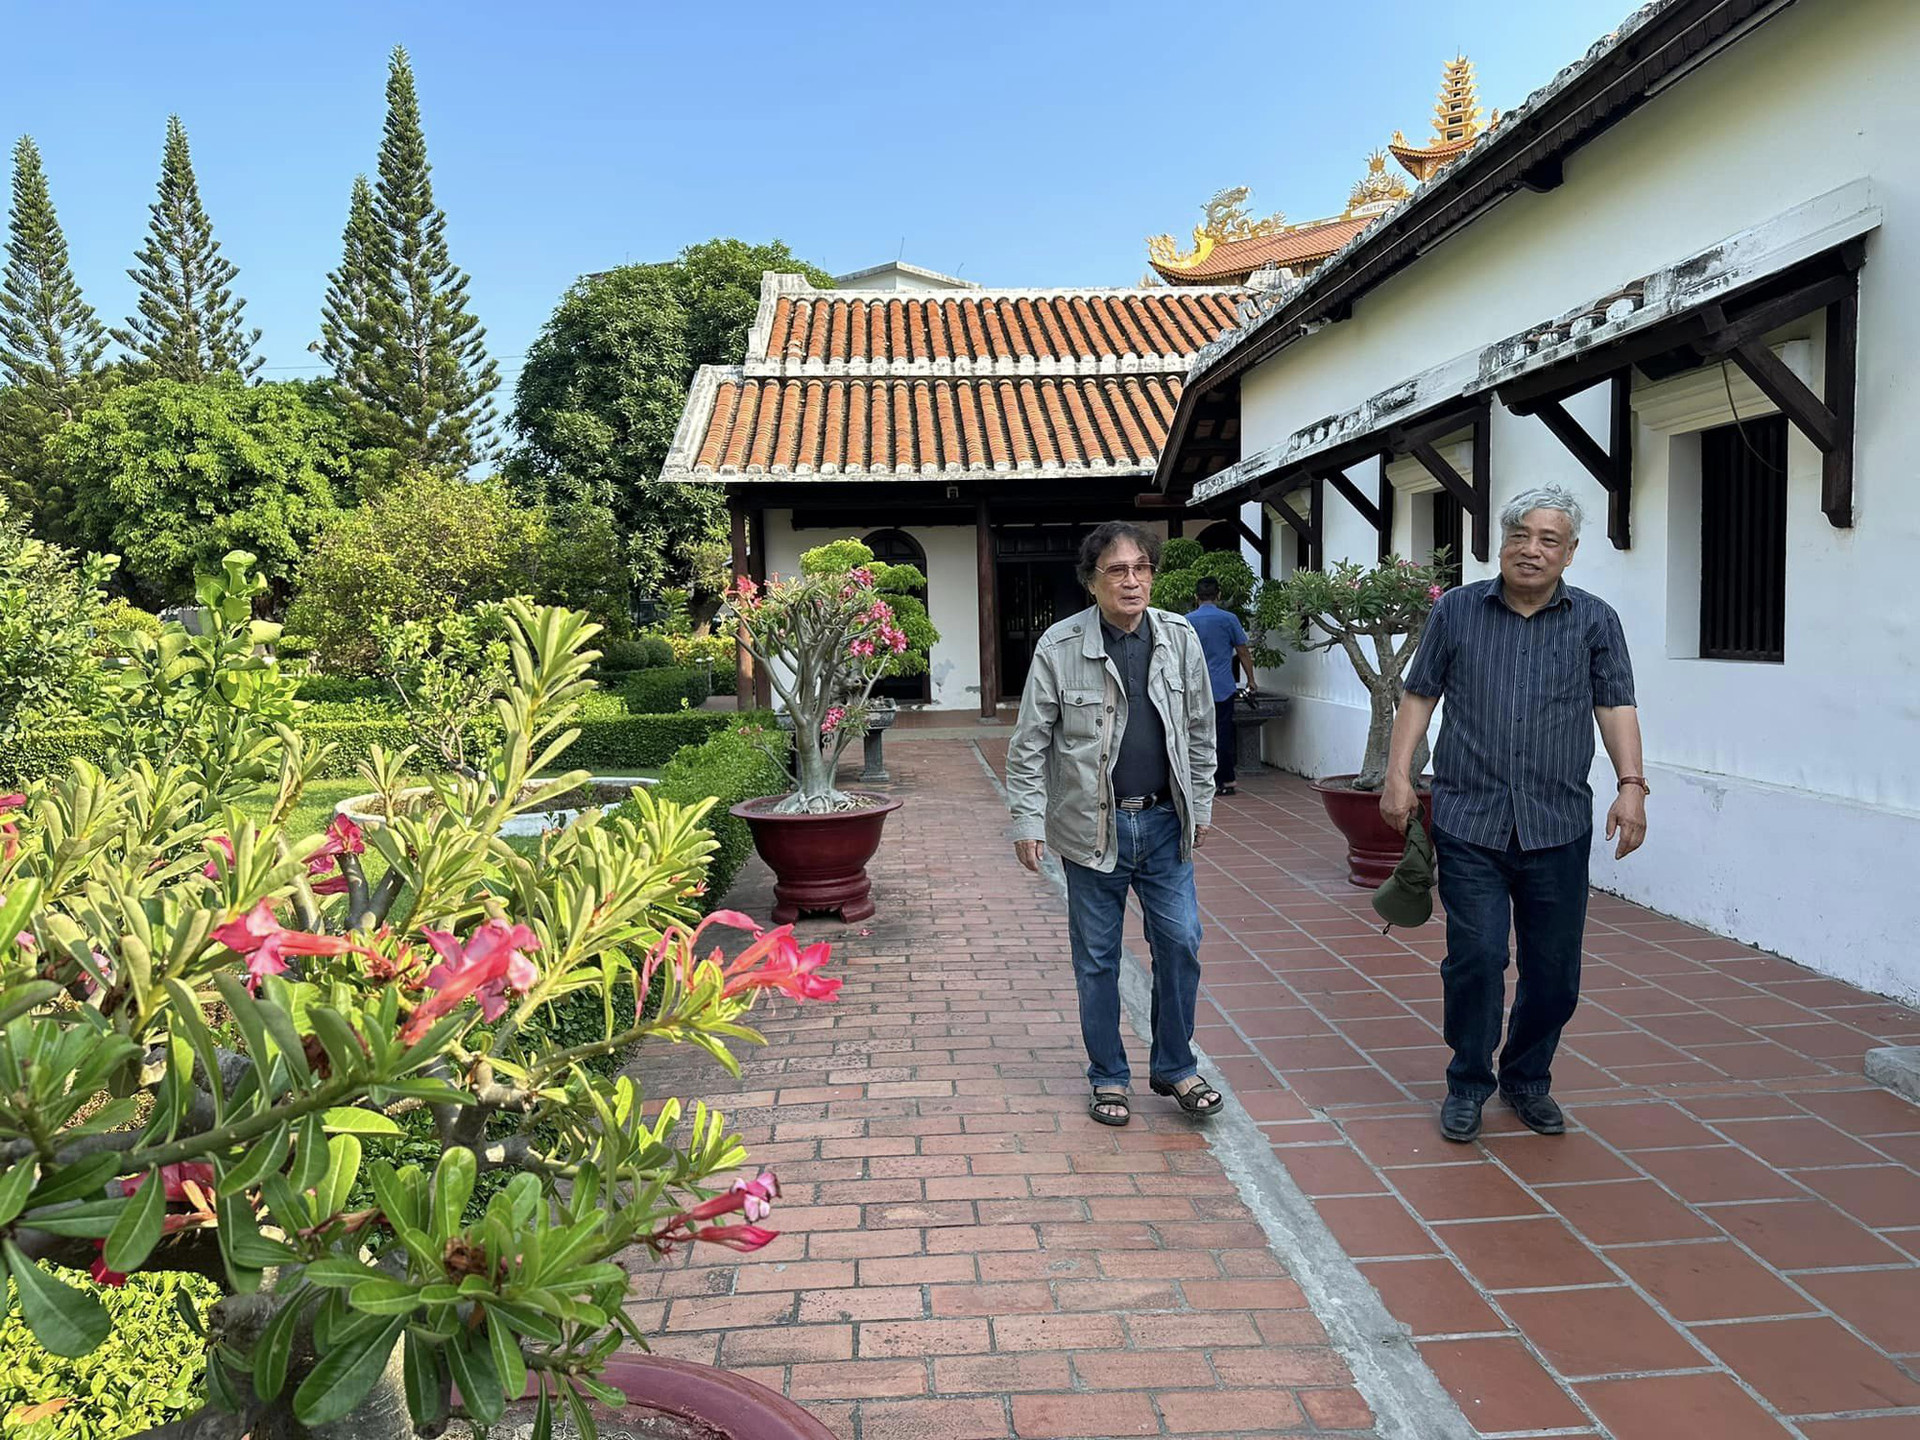 Ông Trần Mai Hạnh (trái) và em trai Trần Mai Hưởng thăm Phan Thiết mới đây trong hành trình xuyên Việt thăm lại chiến trường cũ, người xưa - Ảnh: Facebook Trần Mai Hưởng